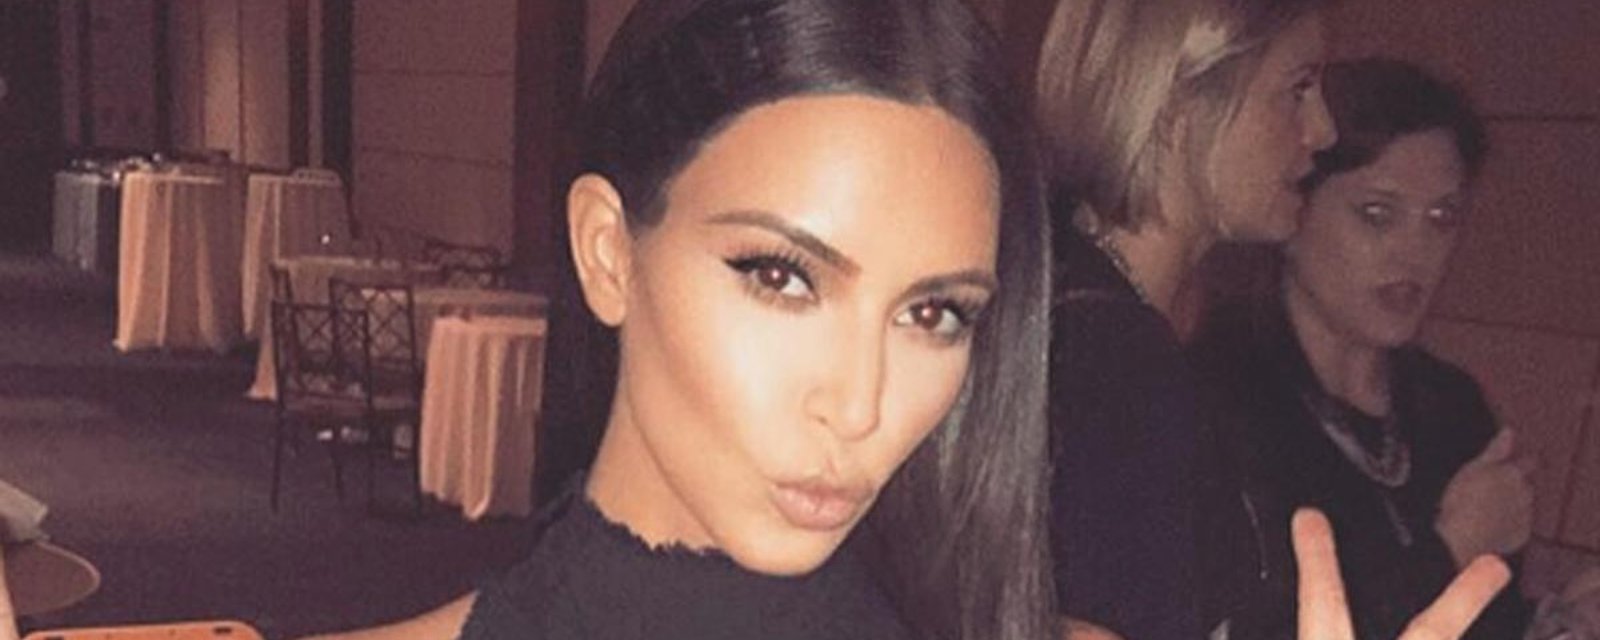 Kim Kardashian publie une nouvelle photo très osée qui fait beaucoup jaser!!!